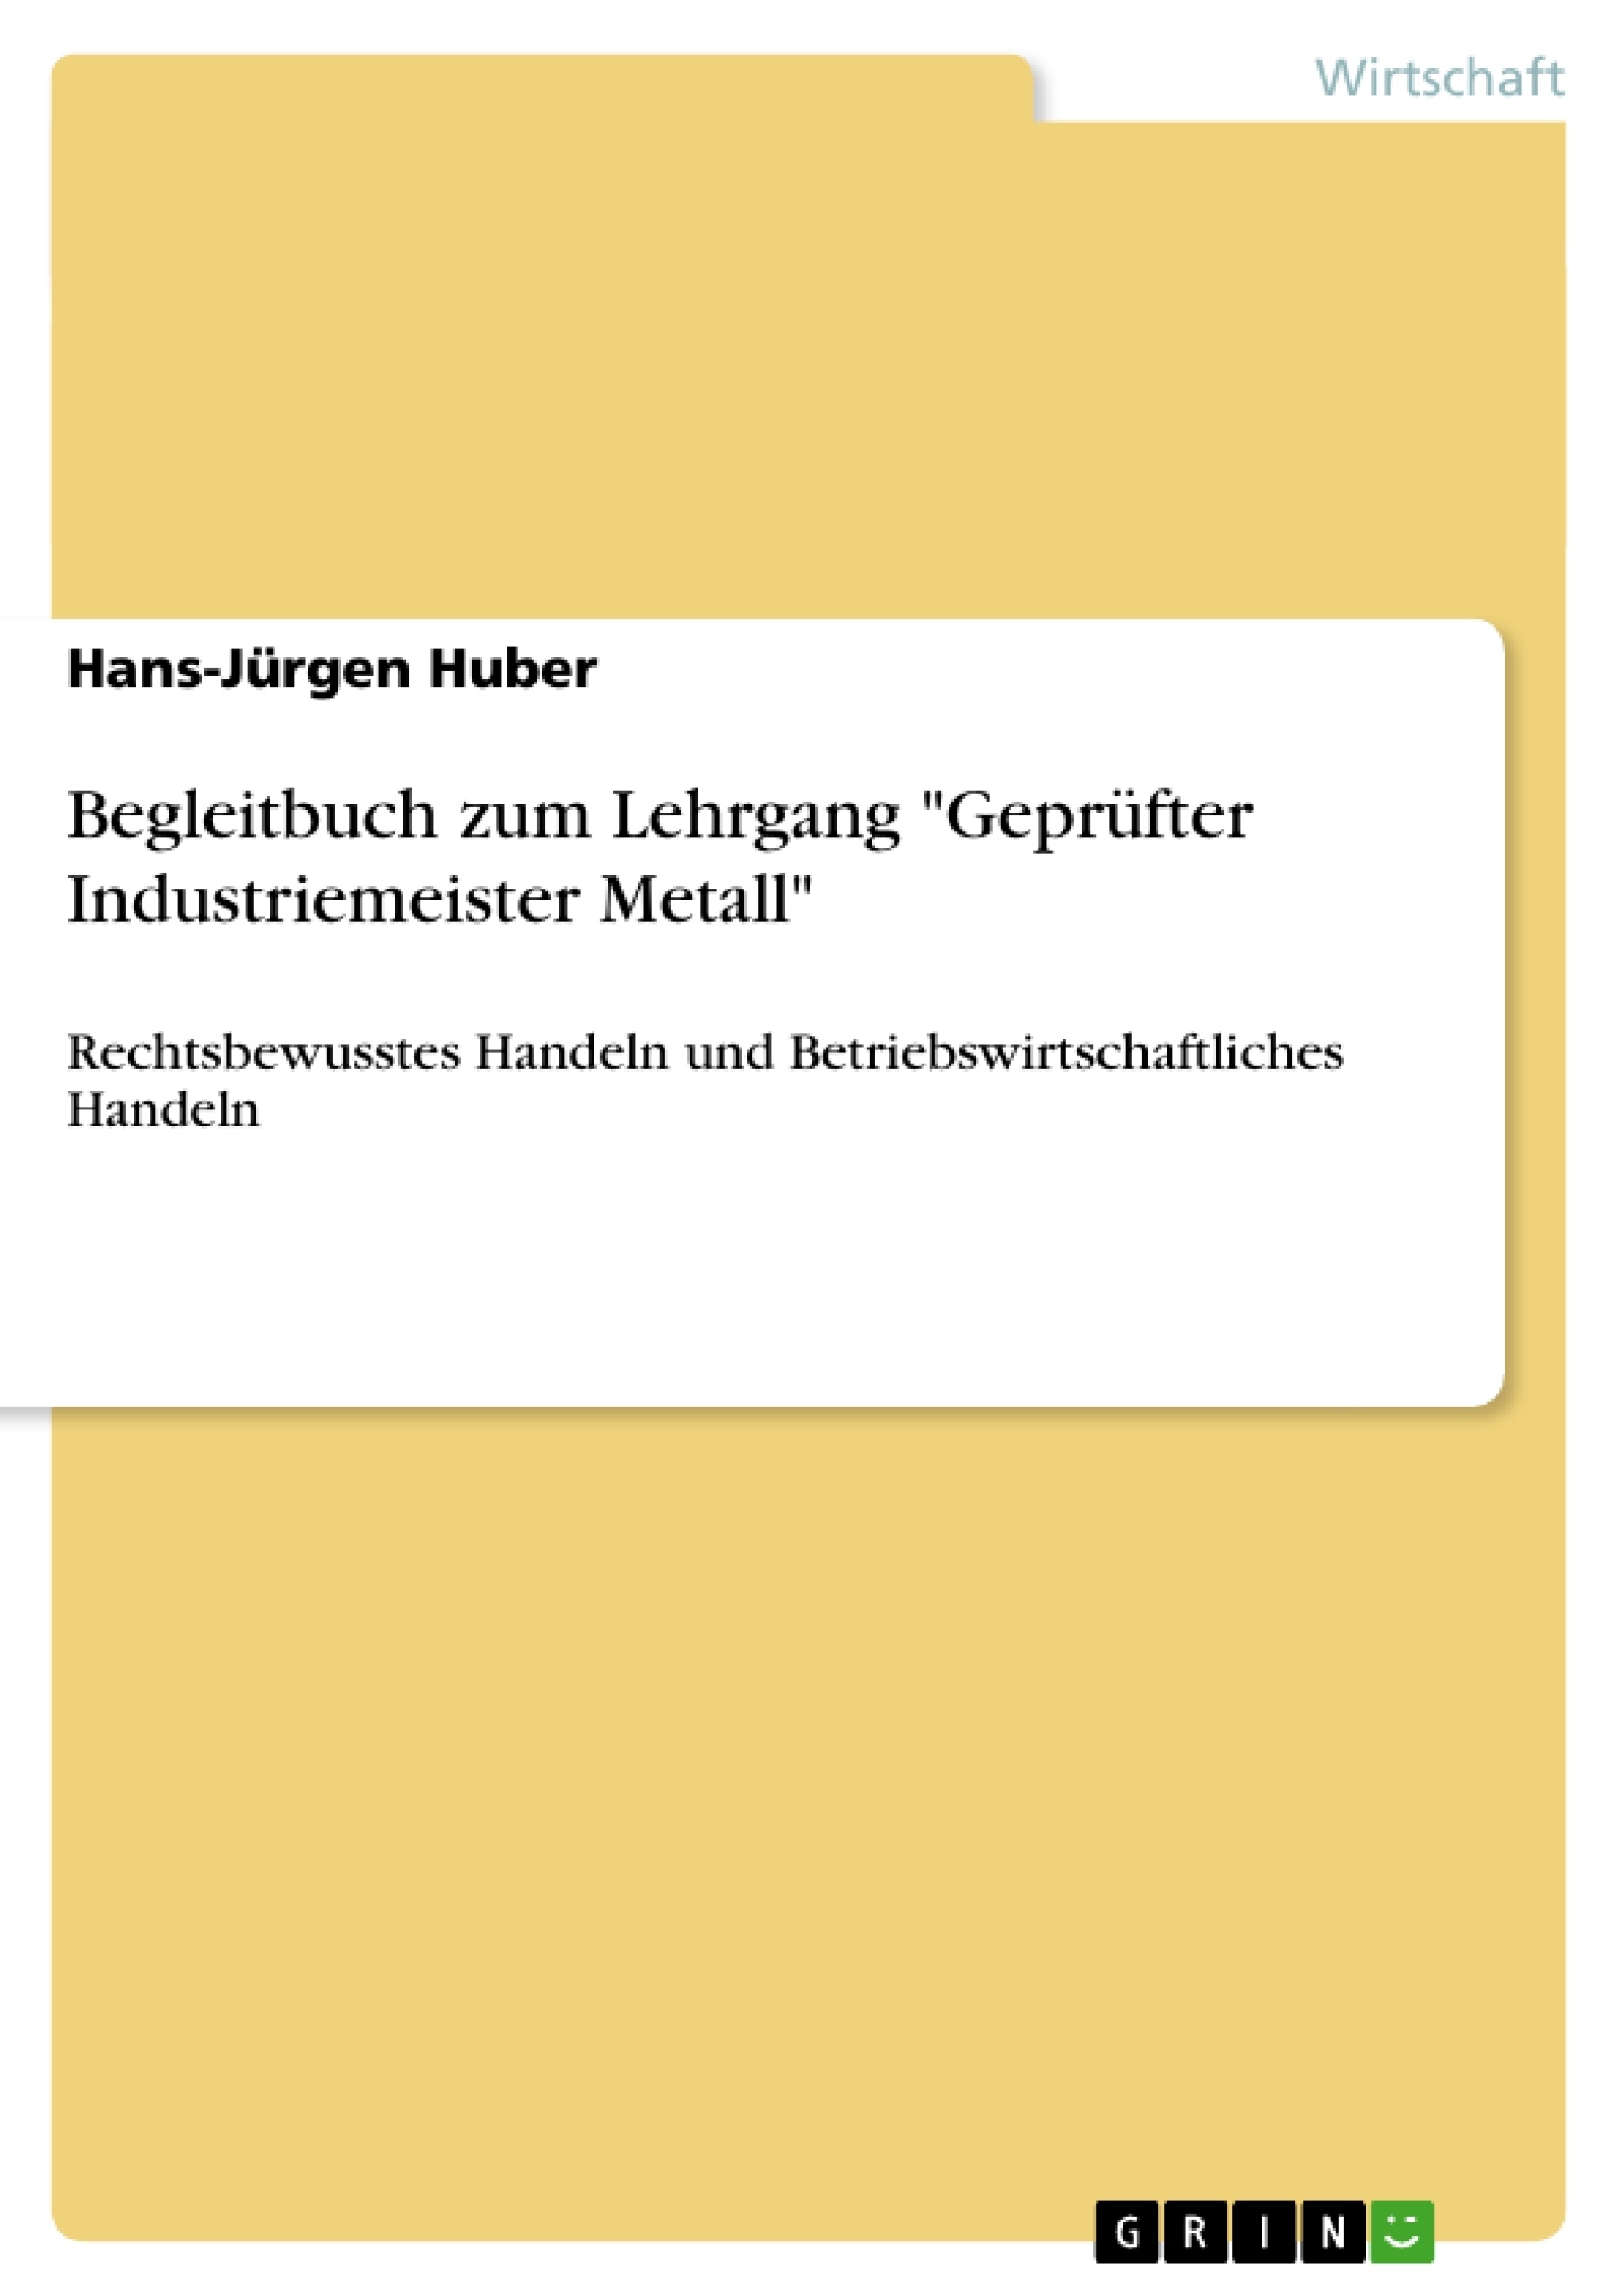 Titre: Begleitbuch zum Lehrgang "Geprüfter Industriemeister Metall"